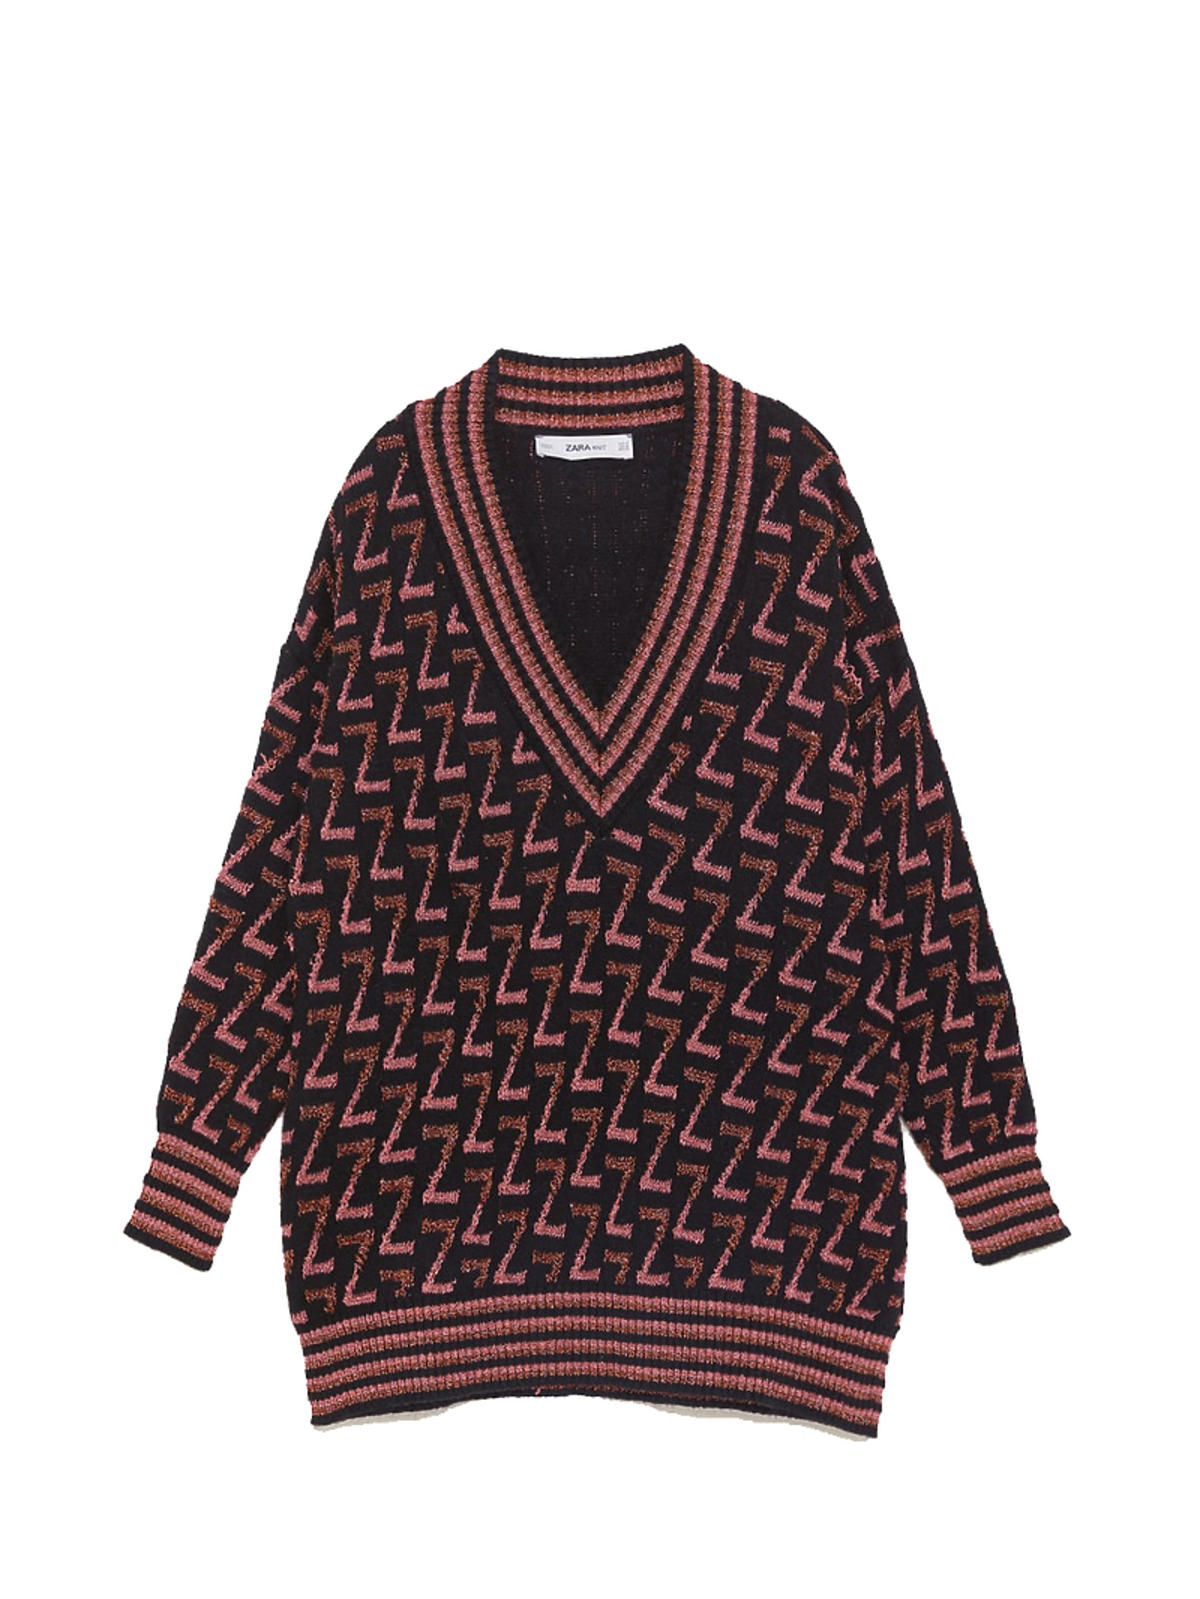 Sweter Zara 139 zł